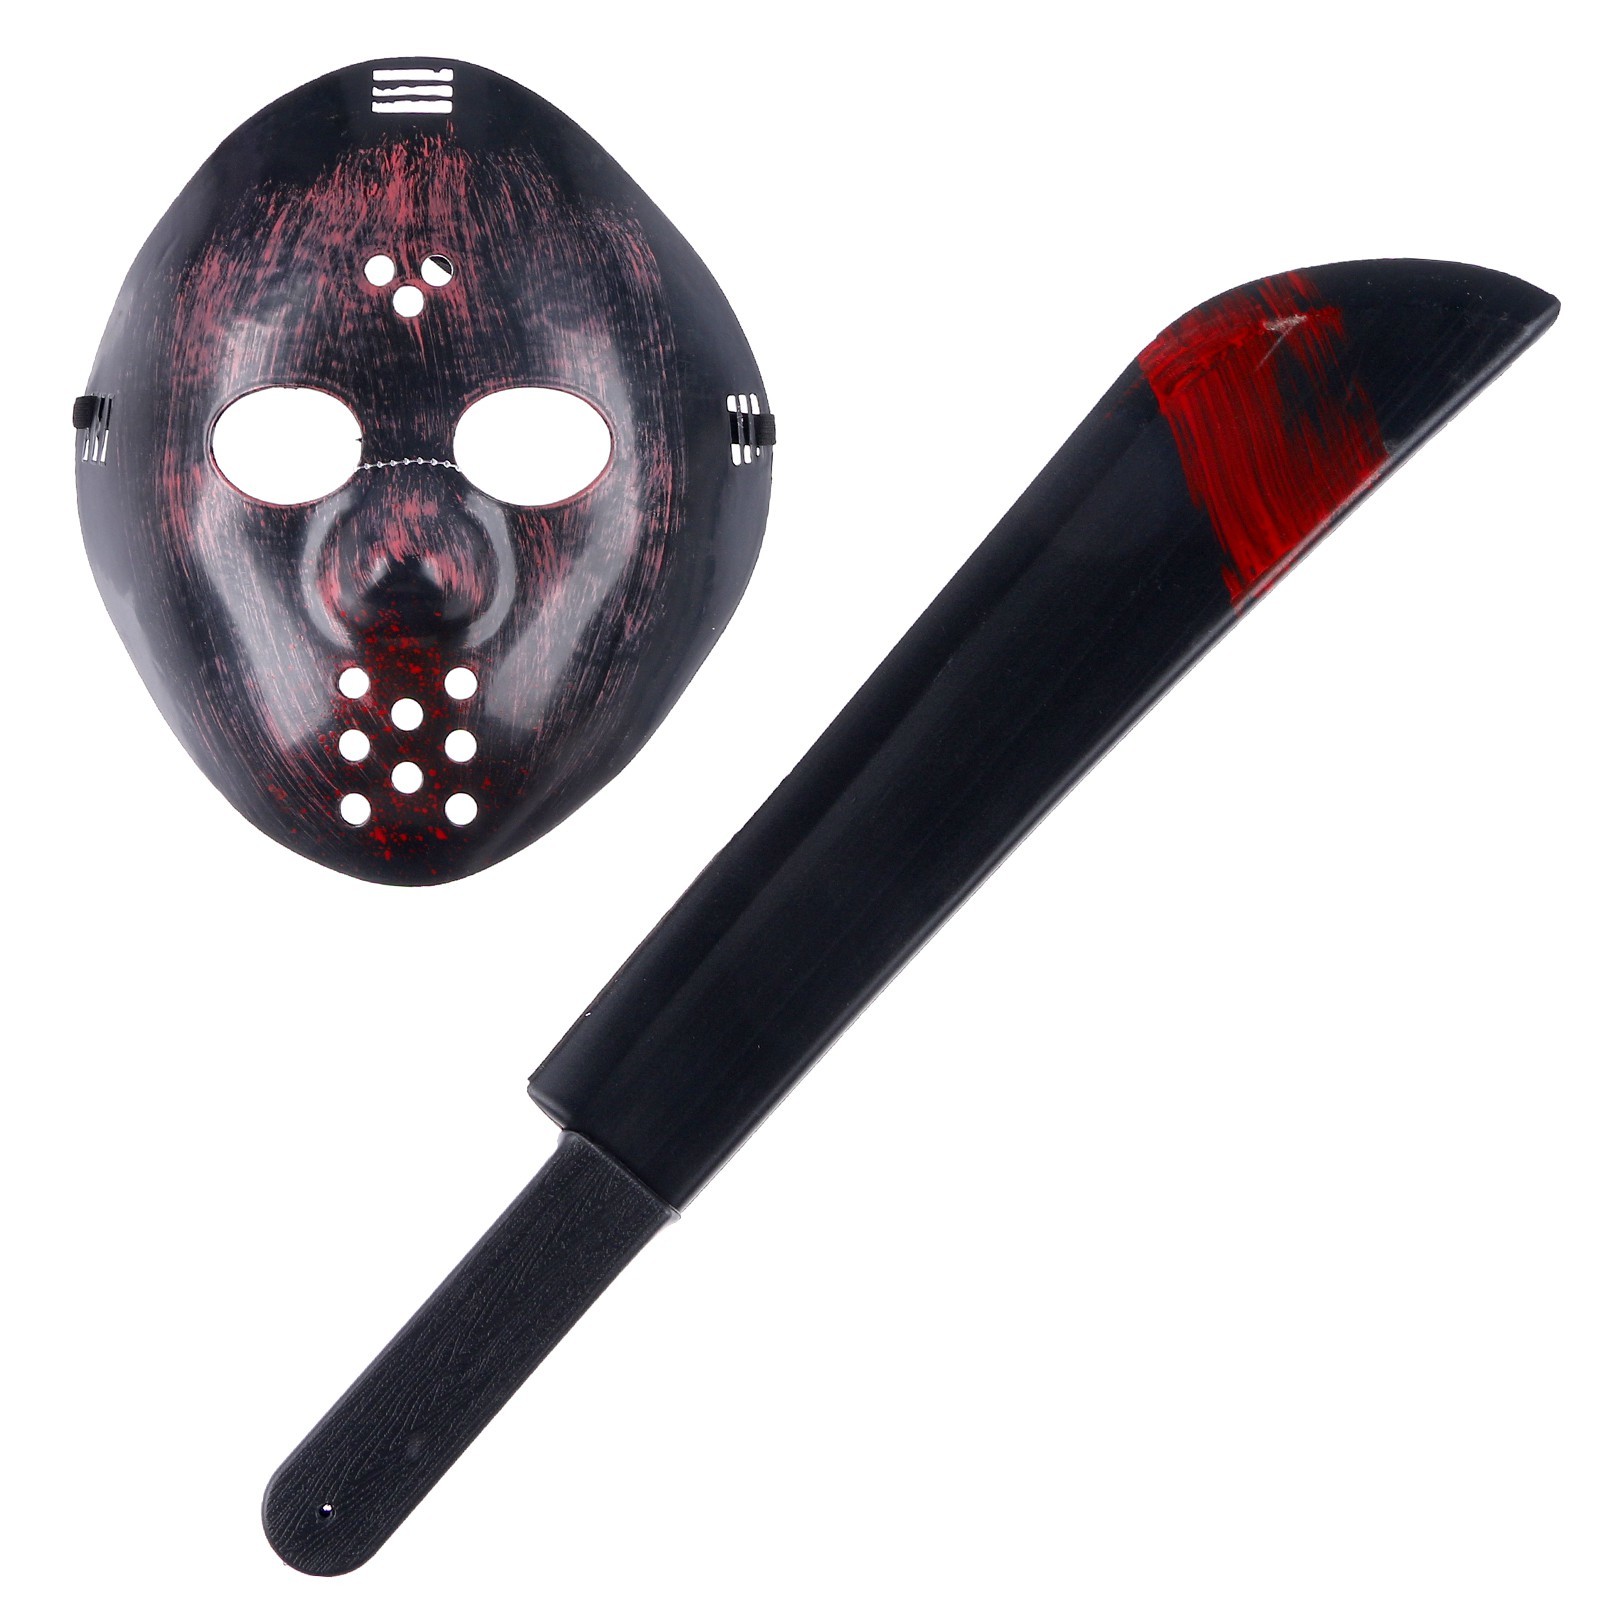 Карнавальный набор Пятница, 2 предмета маска, мачете карнавальный набор бандана в полоску маска с рогами чёрная термонаклейка